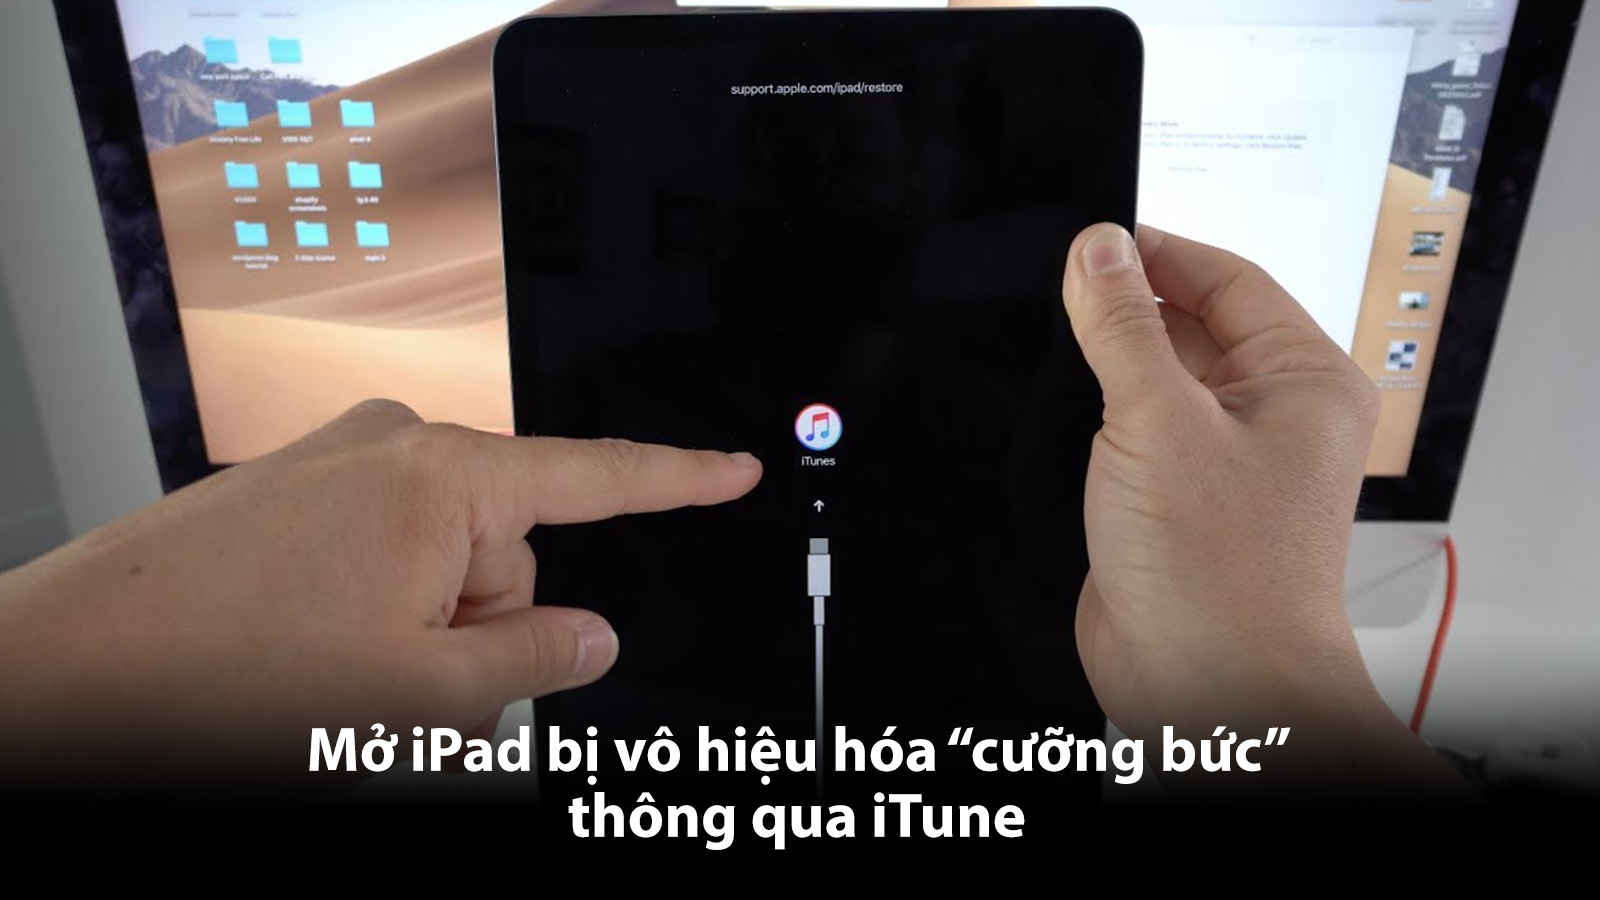 Mở iPad bị vô hiệu hoá "cưỡng bức" thông qua iTune